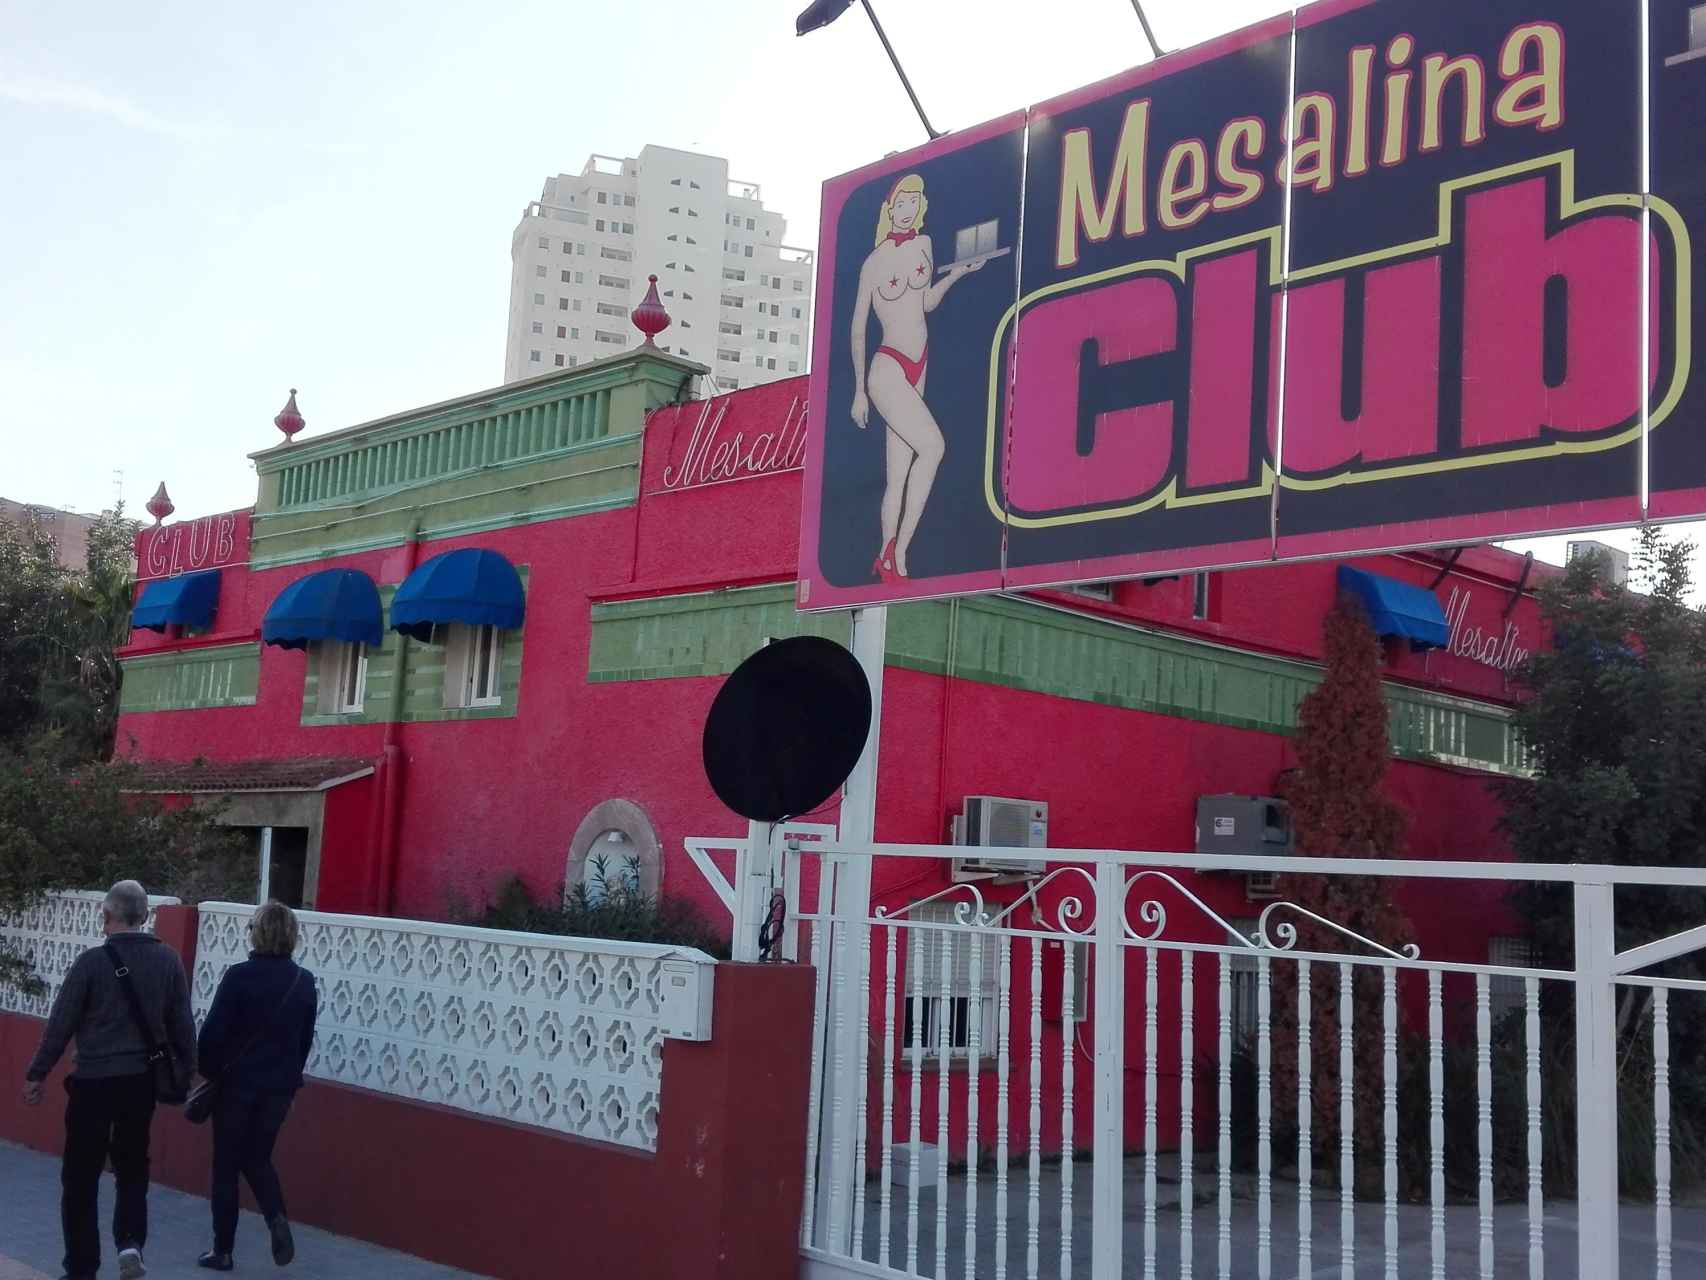 En el club Mesalina se organizó la reunión en la que se habló de acabar con la vida del regidor.